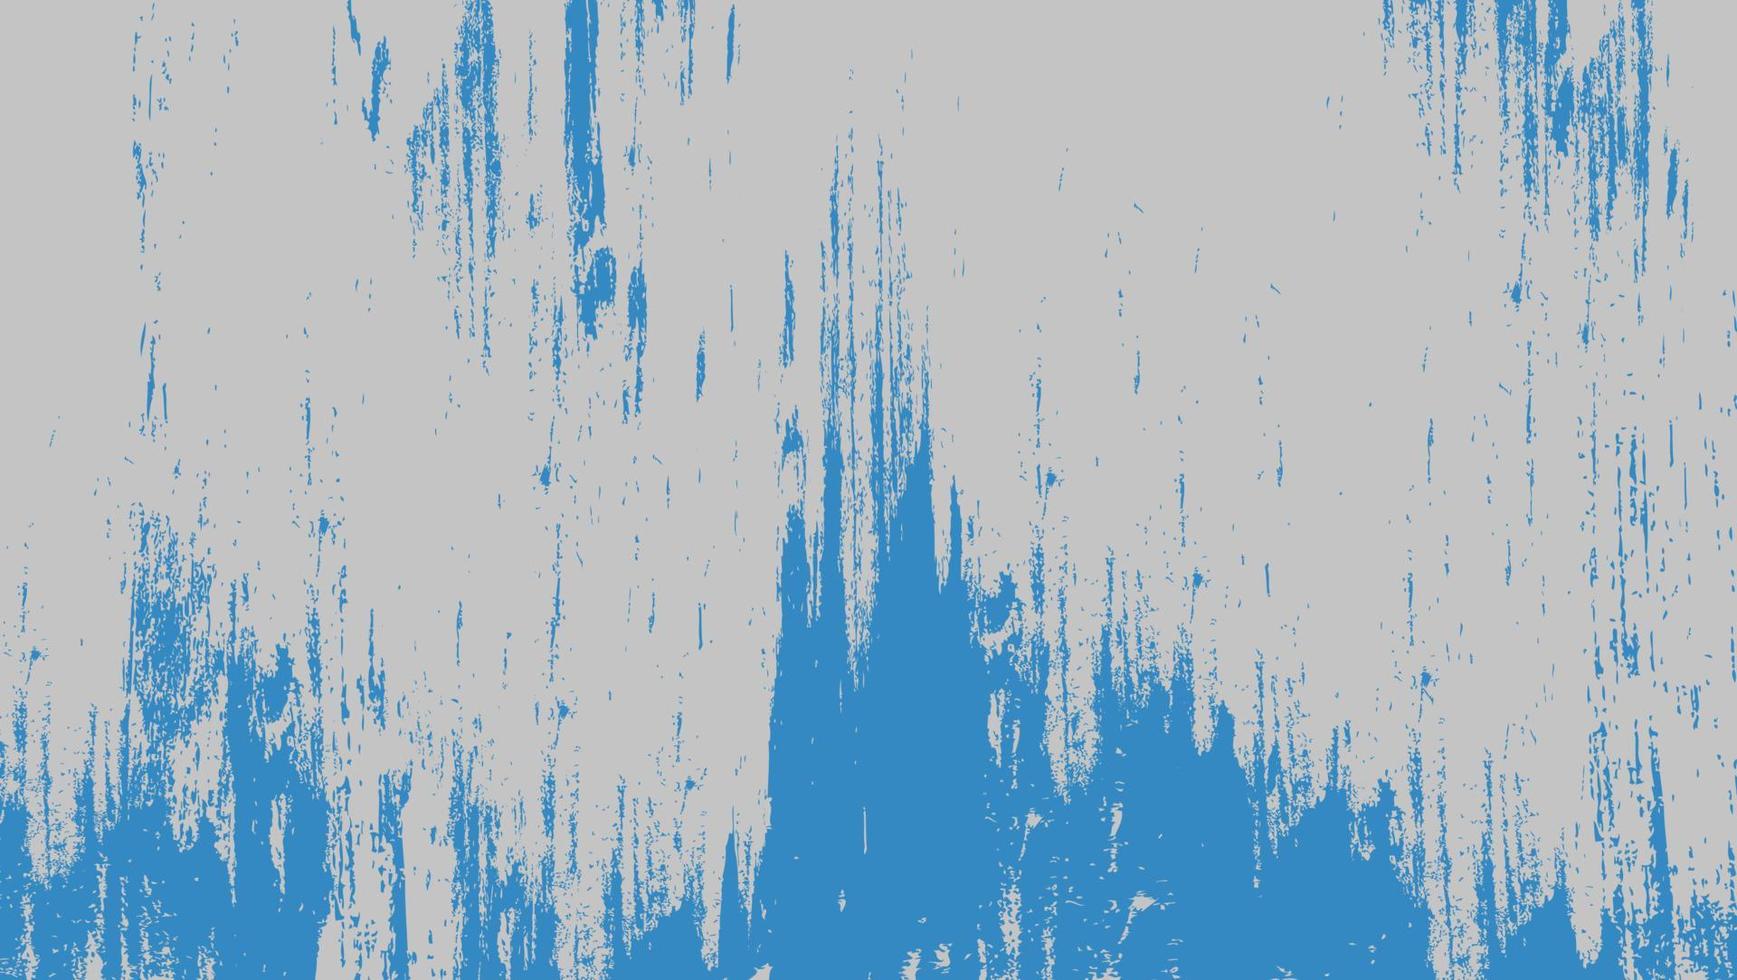 struttura ruvida del grunge astratto della vernice blu nella priorità bassa bianca vettore